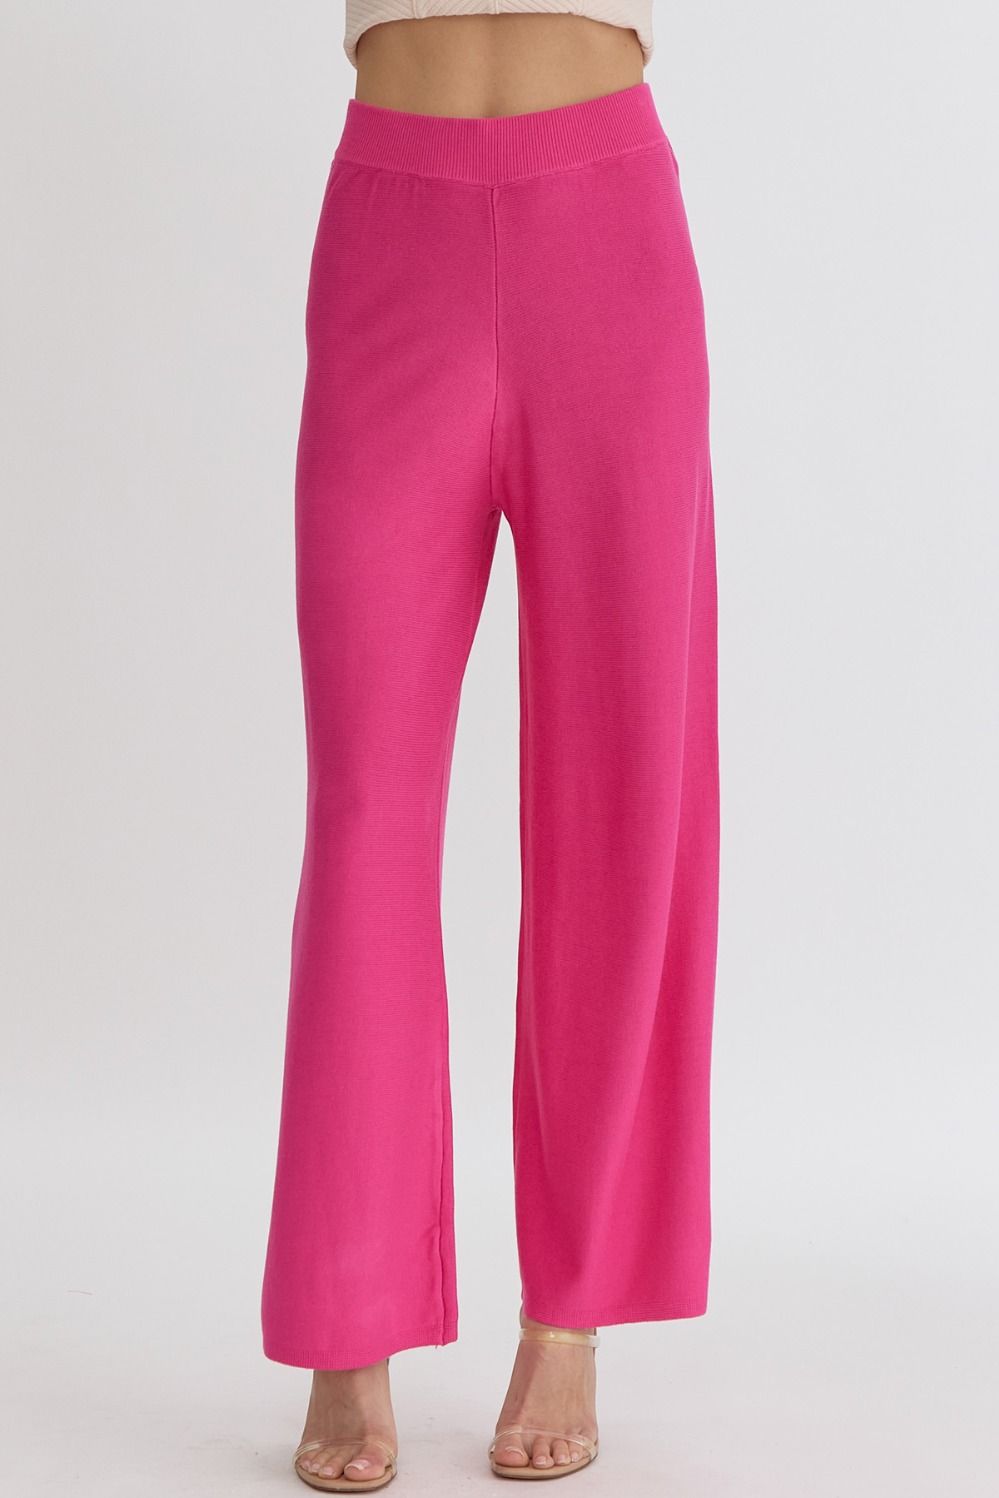 High Waist Wide Leg Knit Pants Hot Pink